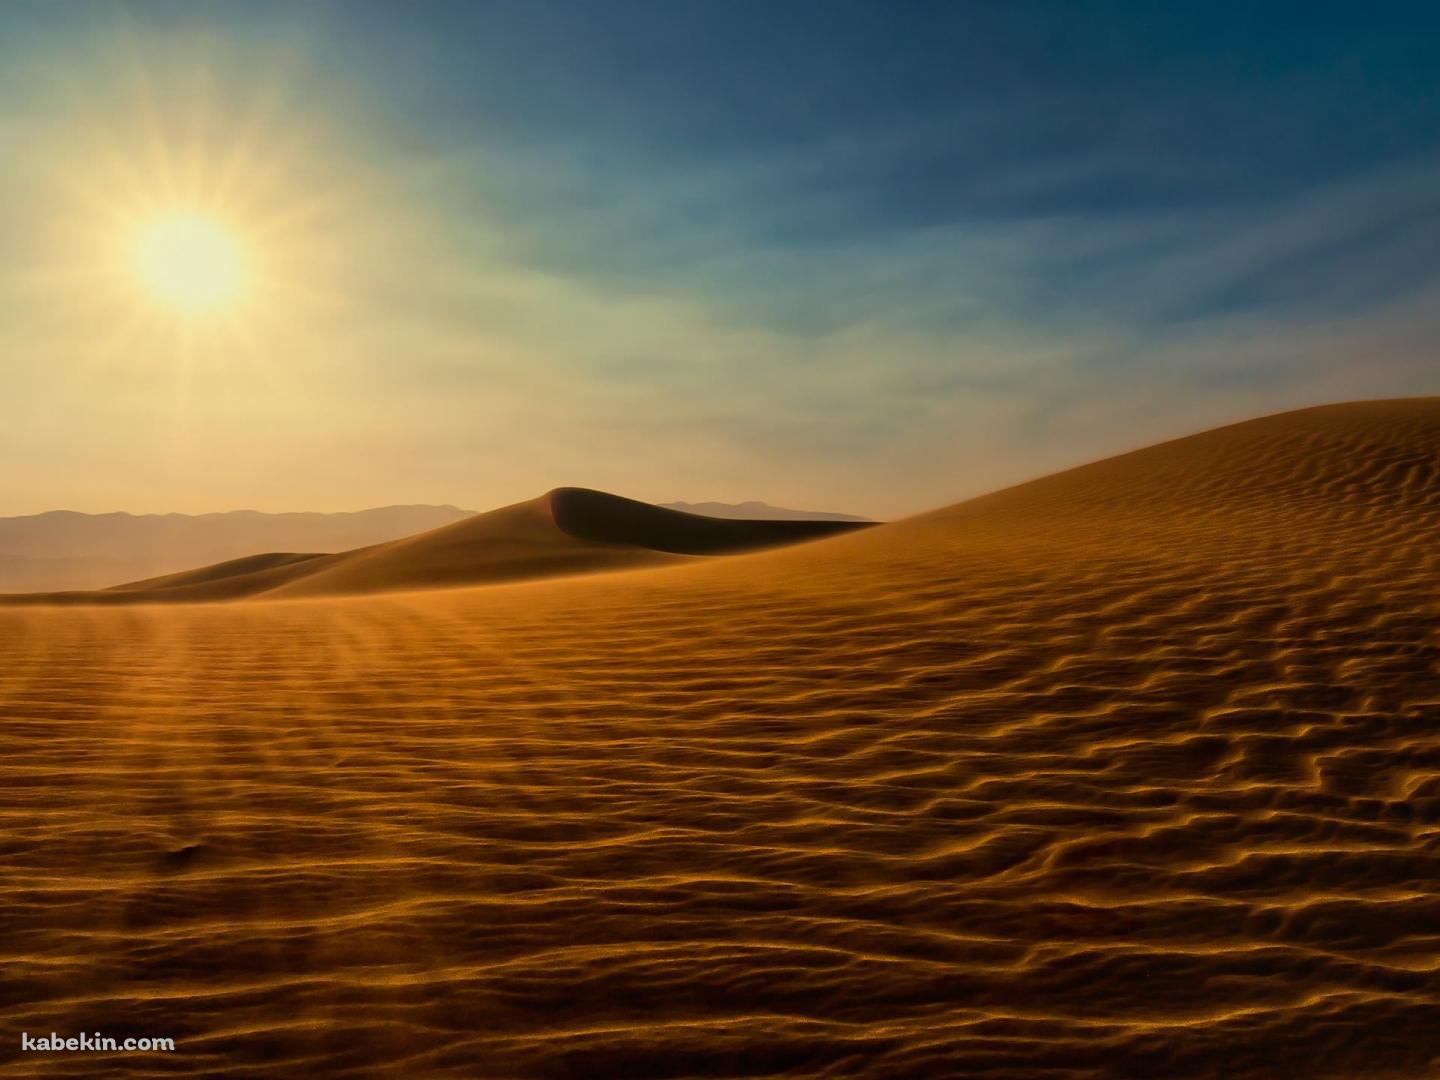 砂漠と太陽の壁紙(1440px x 1080px) 高画質 PC・デスクトップ用